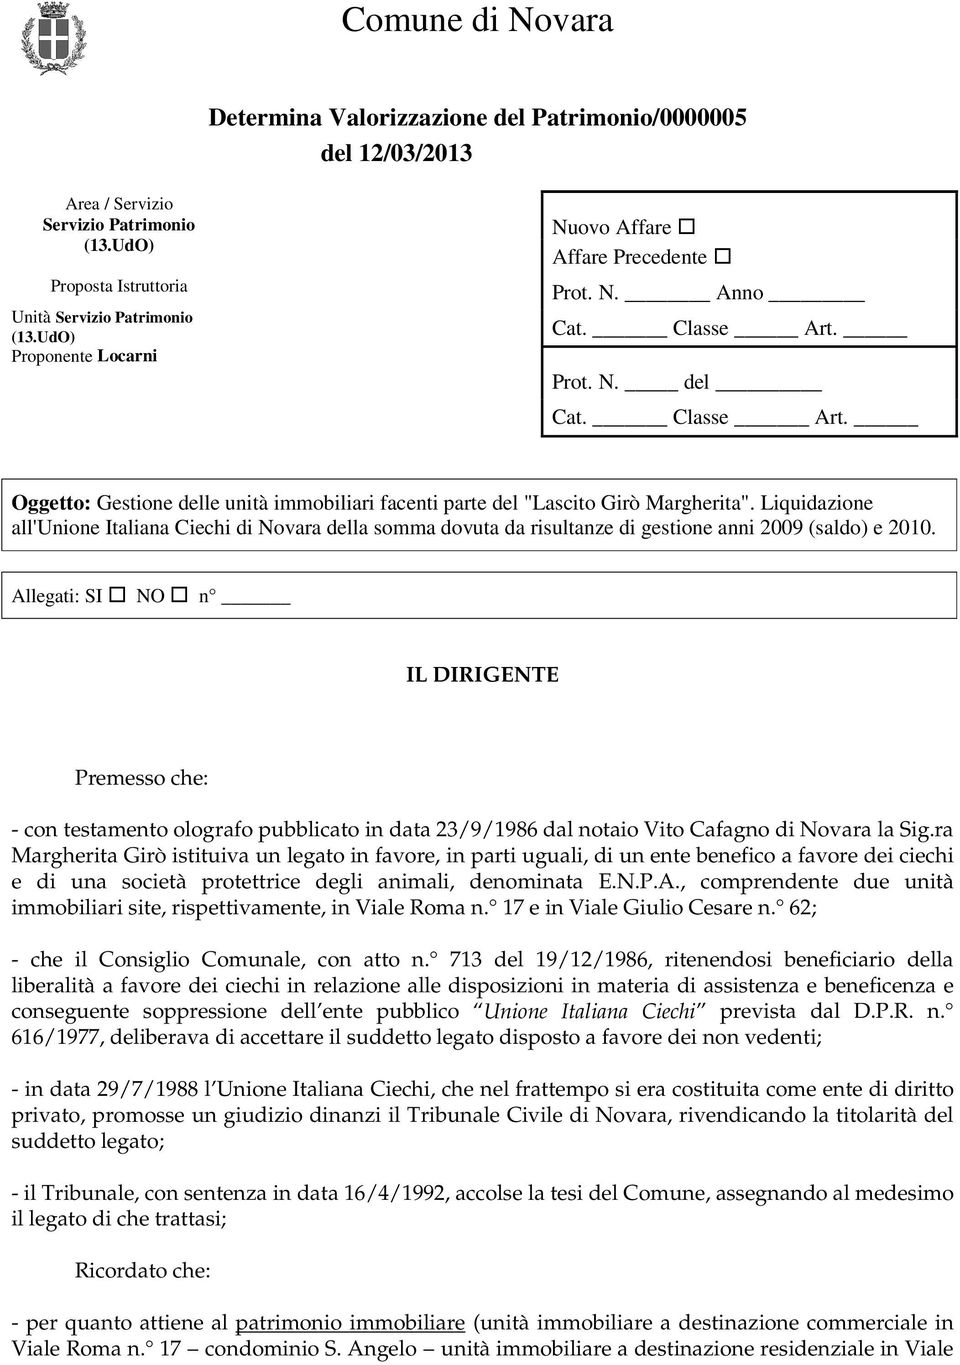 Liquidazione all'unione Italiana Ciechi di Novara della somma dovuta da risultanze di gestione anni 2009 (saldo) e 2010.